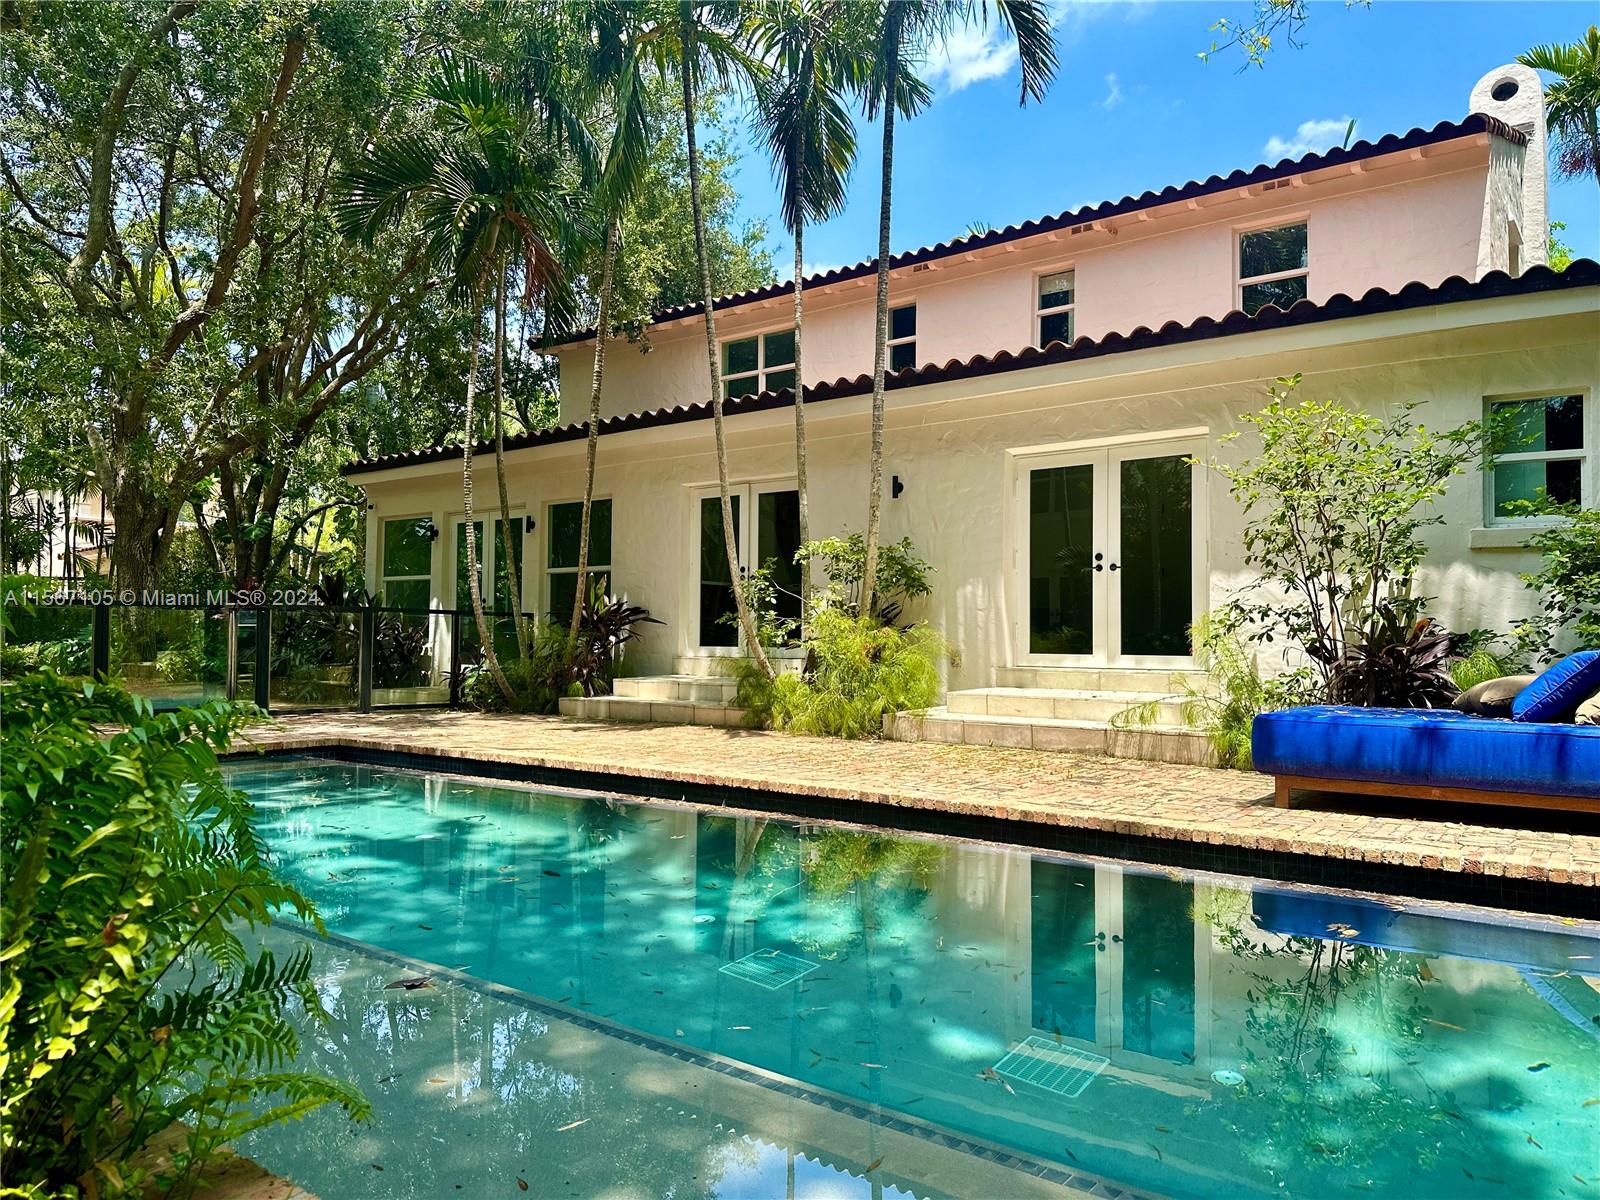 Property for Sale at 5812 Alton Rd Rd, Miami Beach, Miami-Dade County, Florida - Bedrooms: 7 
Bathrooms: 7  - $6,950,000